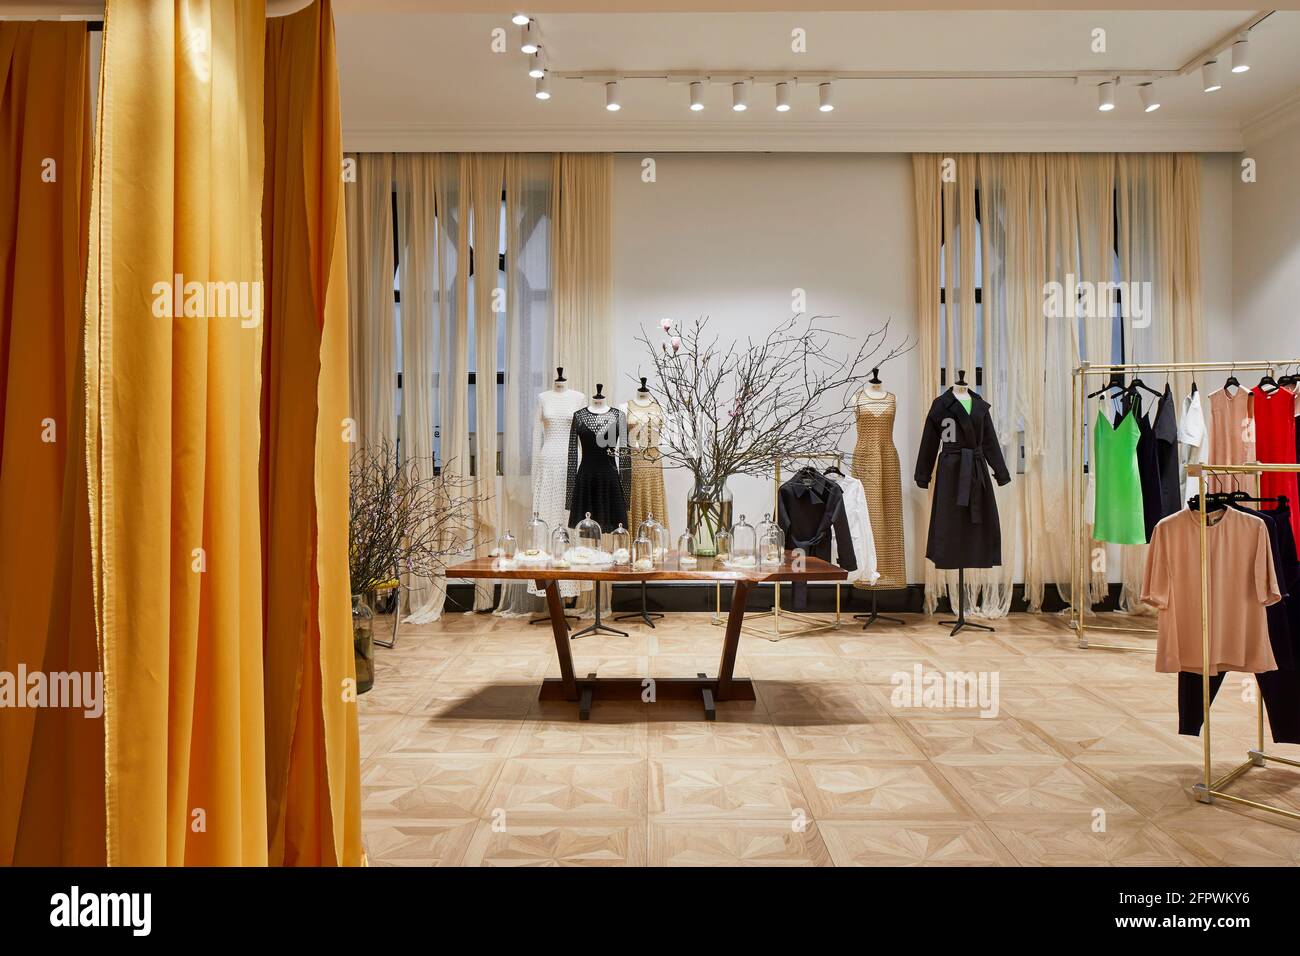 Intérieur du magasin. Maison Rabih Kayrouz Boutique, Londres, Royaume-Uni. Architecte: n/a, 2020. Banque D'Images